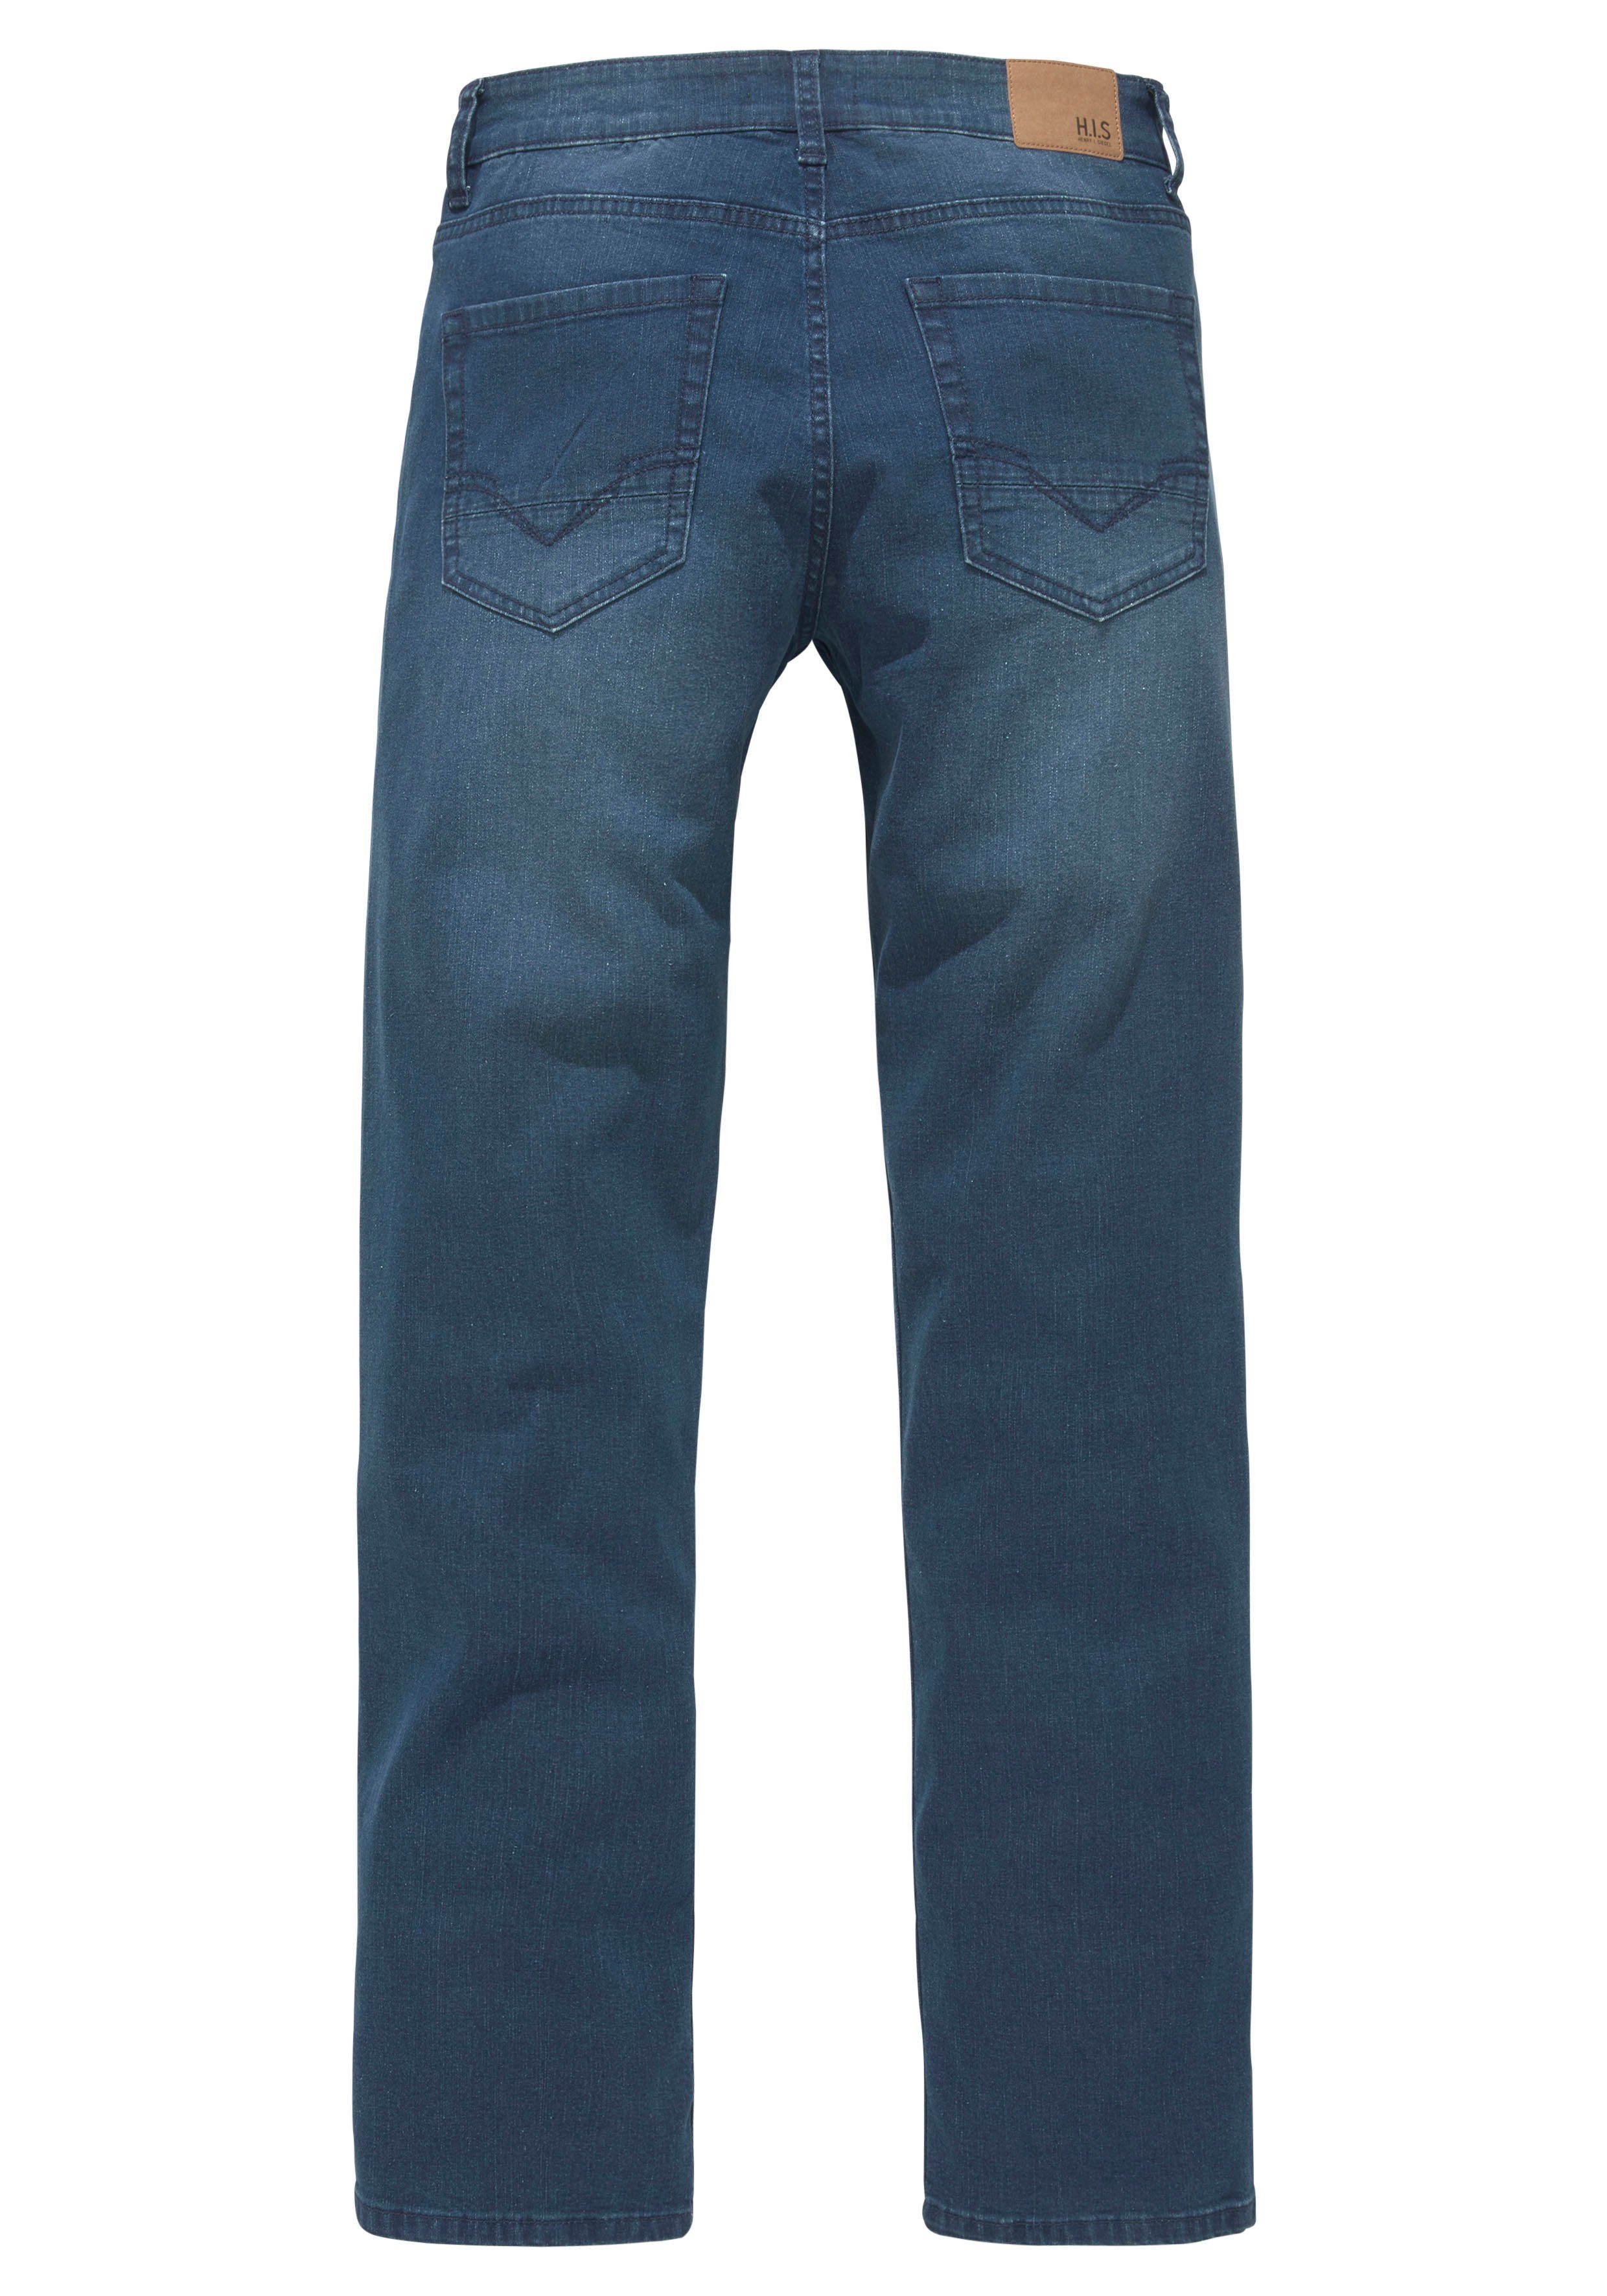 Slim-fit-Jeans Ozon Wash FLUSH wassersparende durch darkblue-used Ökologische, Produktion H.I.S